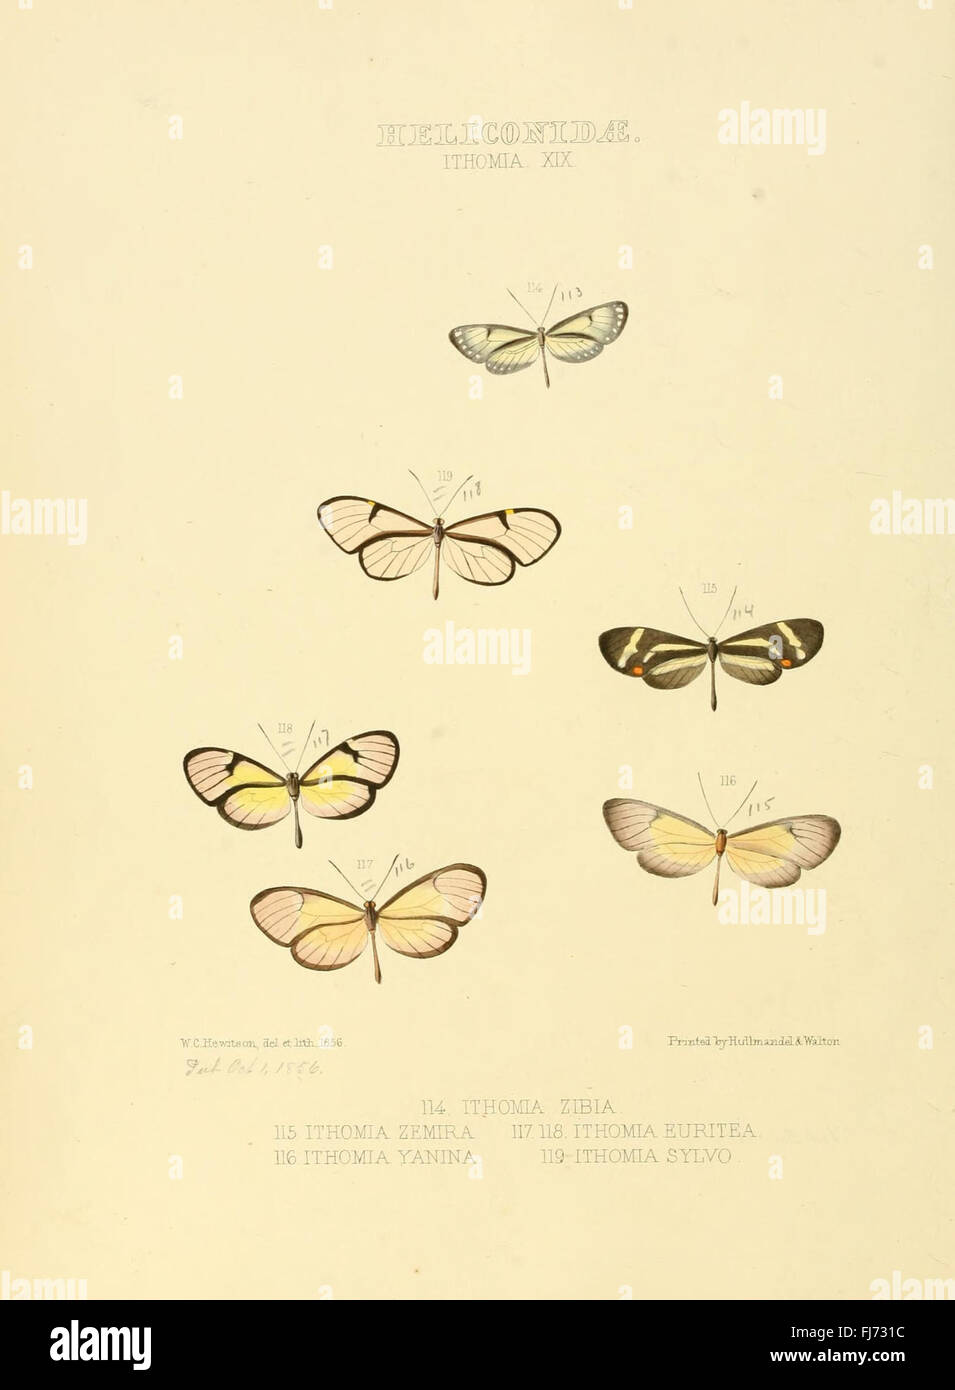 Illustrazioni di nuove specie di farfalle esotiche (Heliconidae- Ithomia XIX) Foto Stock